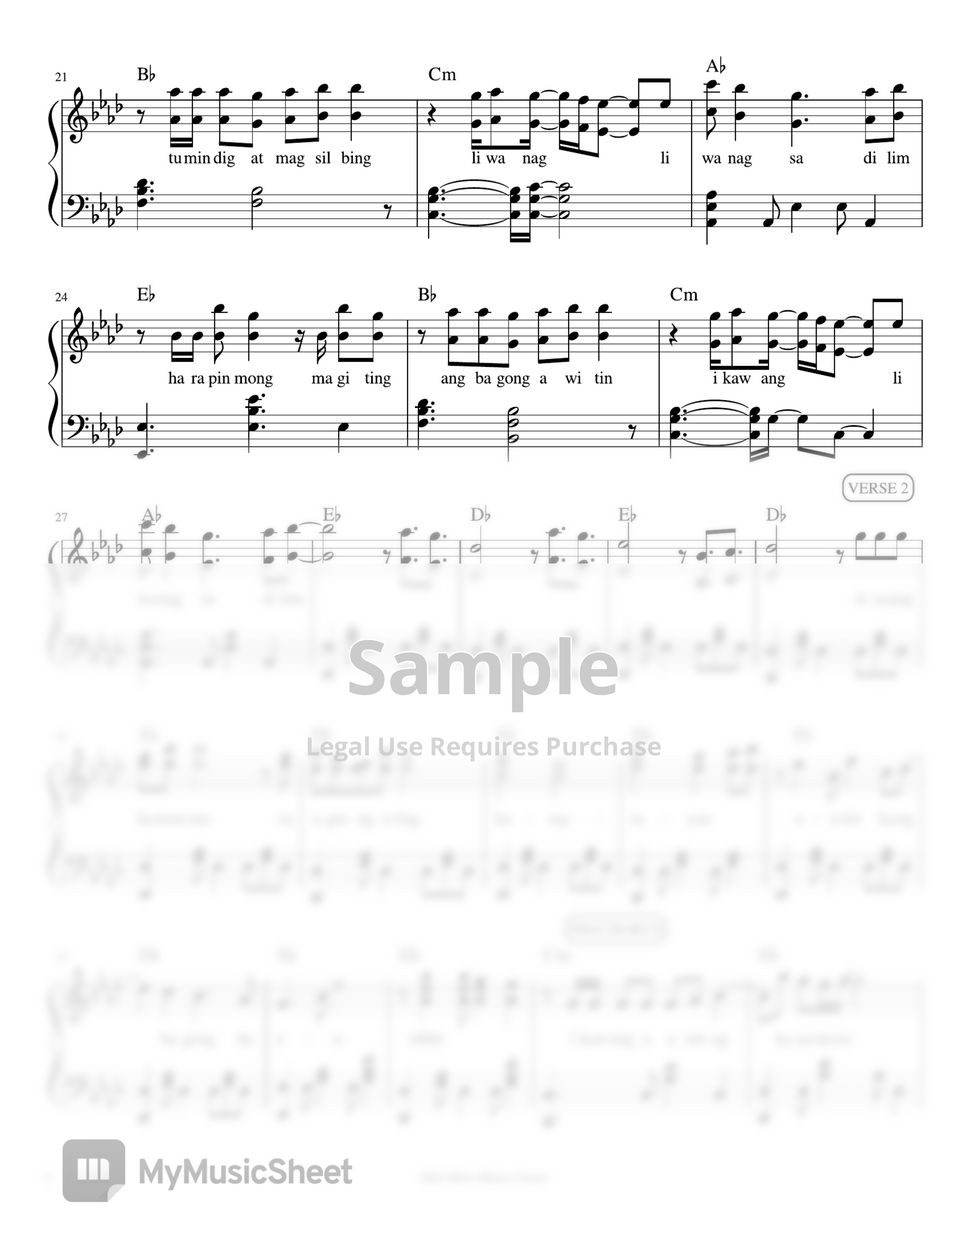 Rivermaya - Liwanag sa Dilim (piano sheet music) by Mel's Music Corner